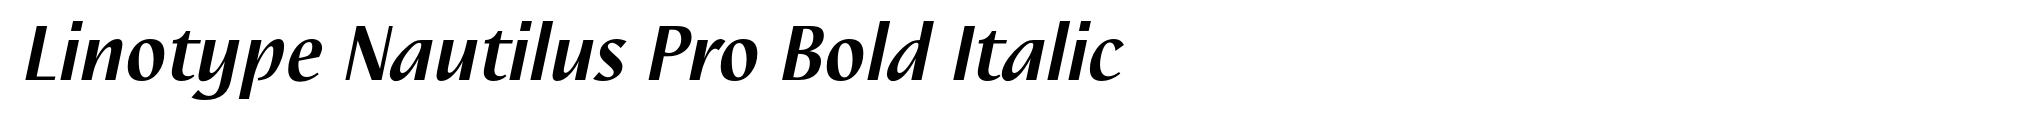 Linotype Nautilus Pro Bold Italic image